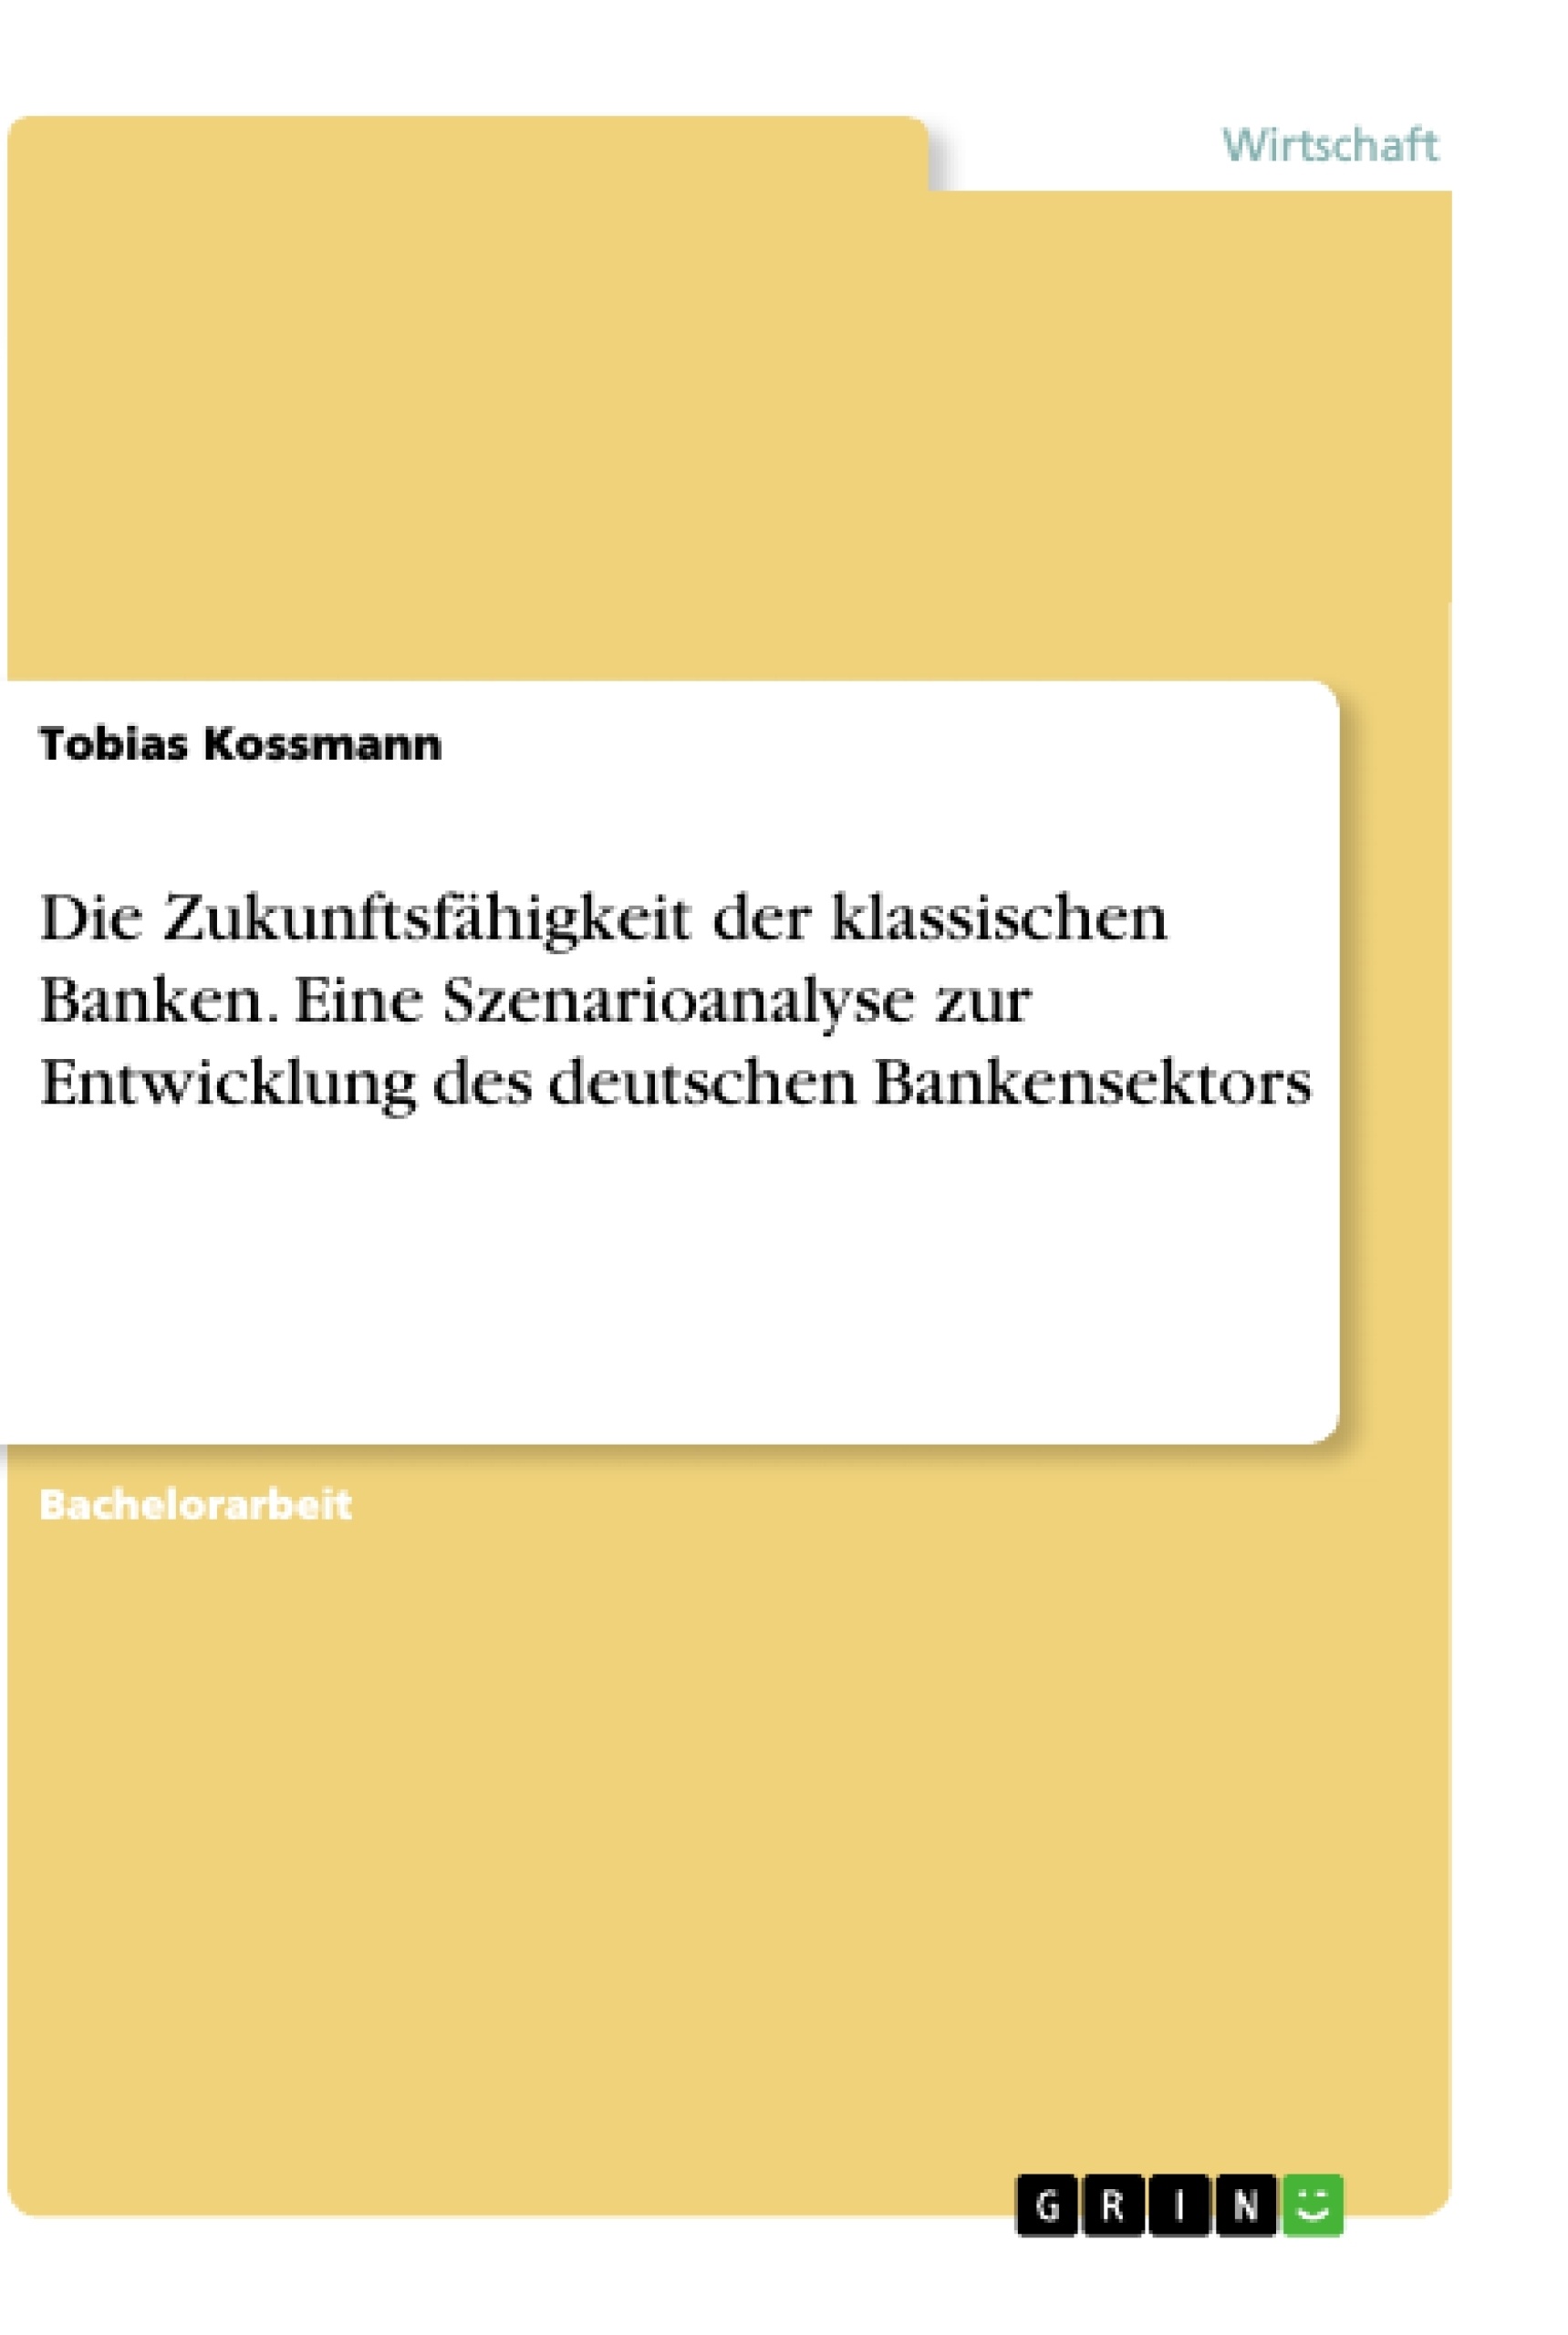 Title: Die Zukunftsfähigkeit der klassischen Banken. Eine Szenarioanalyse zur Entwicklung des deutschen Bankensektors